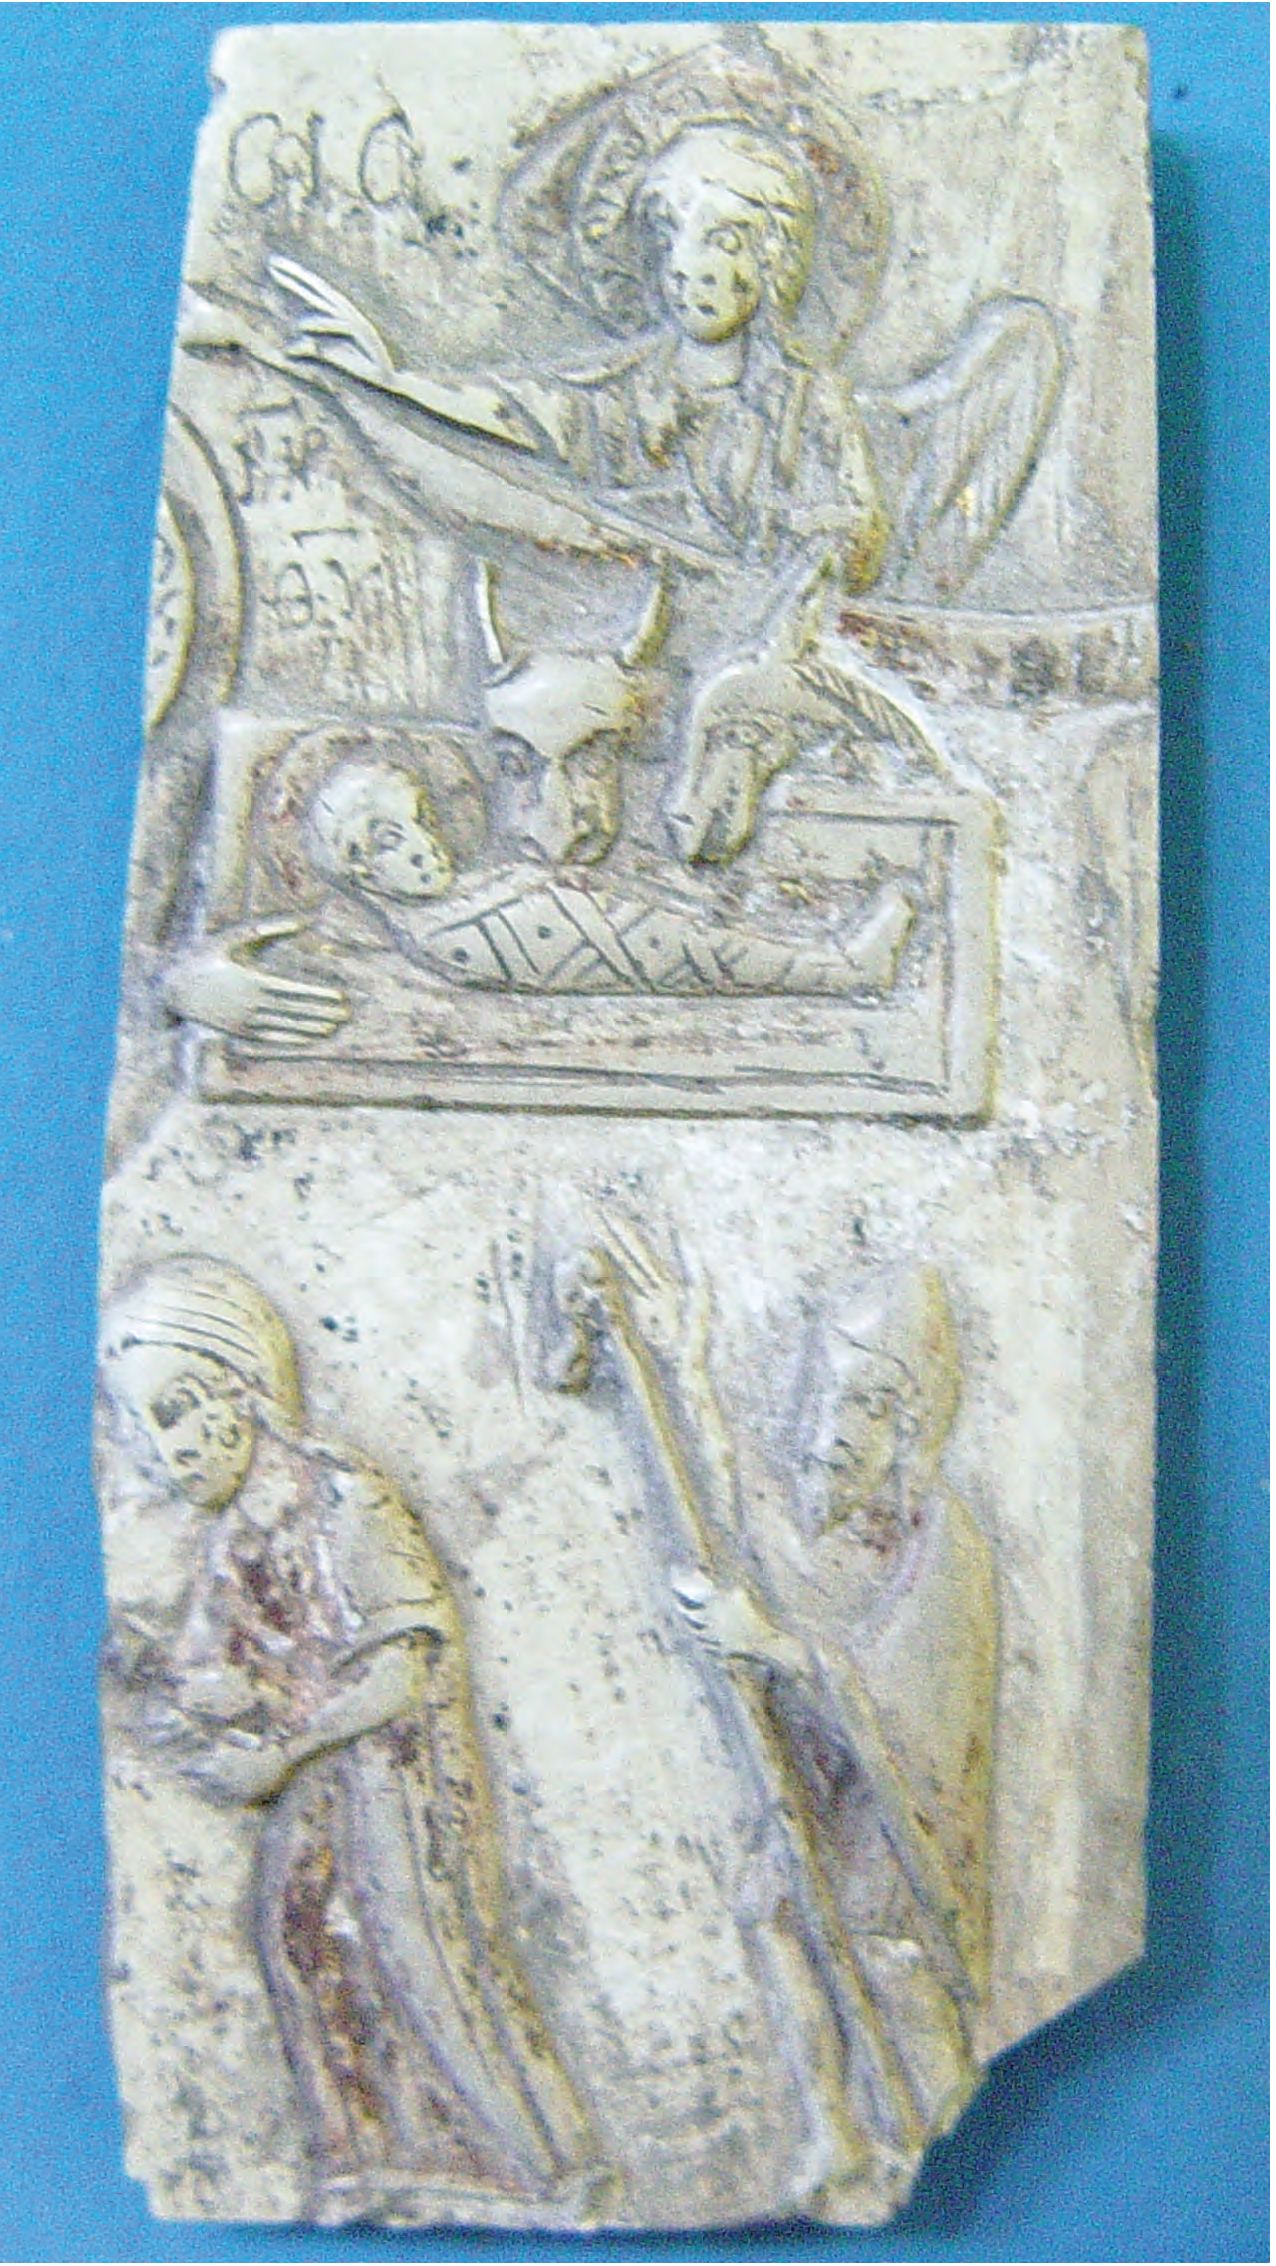 46. Икона со сценой Вознесения, стеатит, XII—XIII вв.